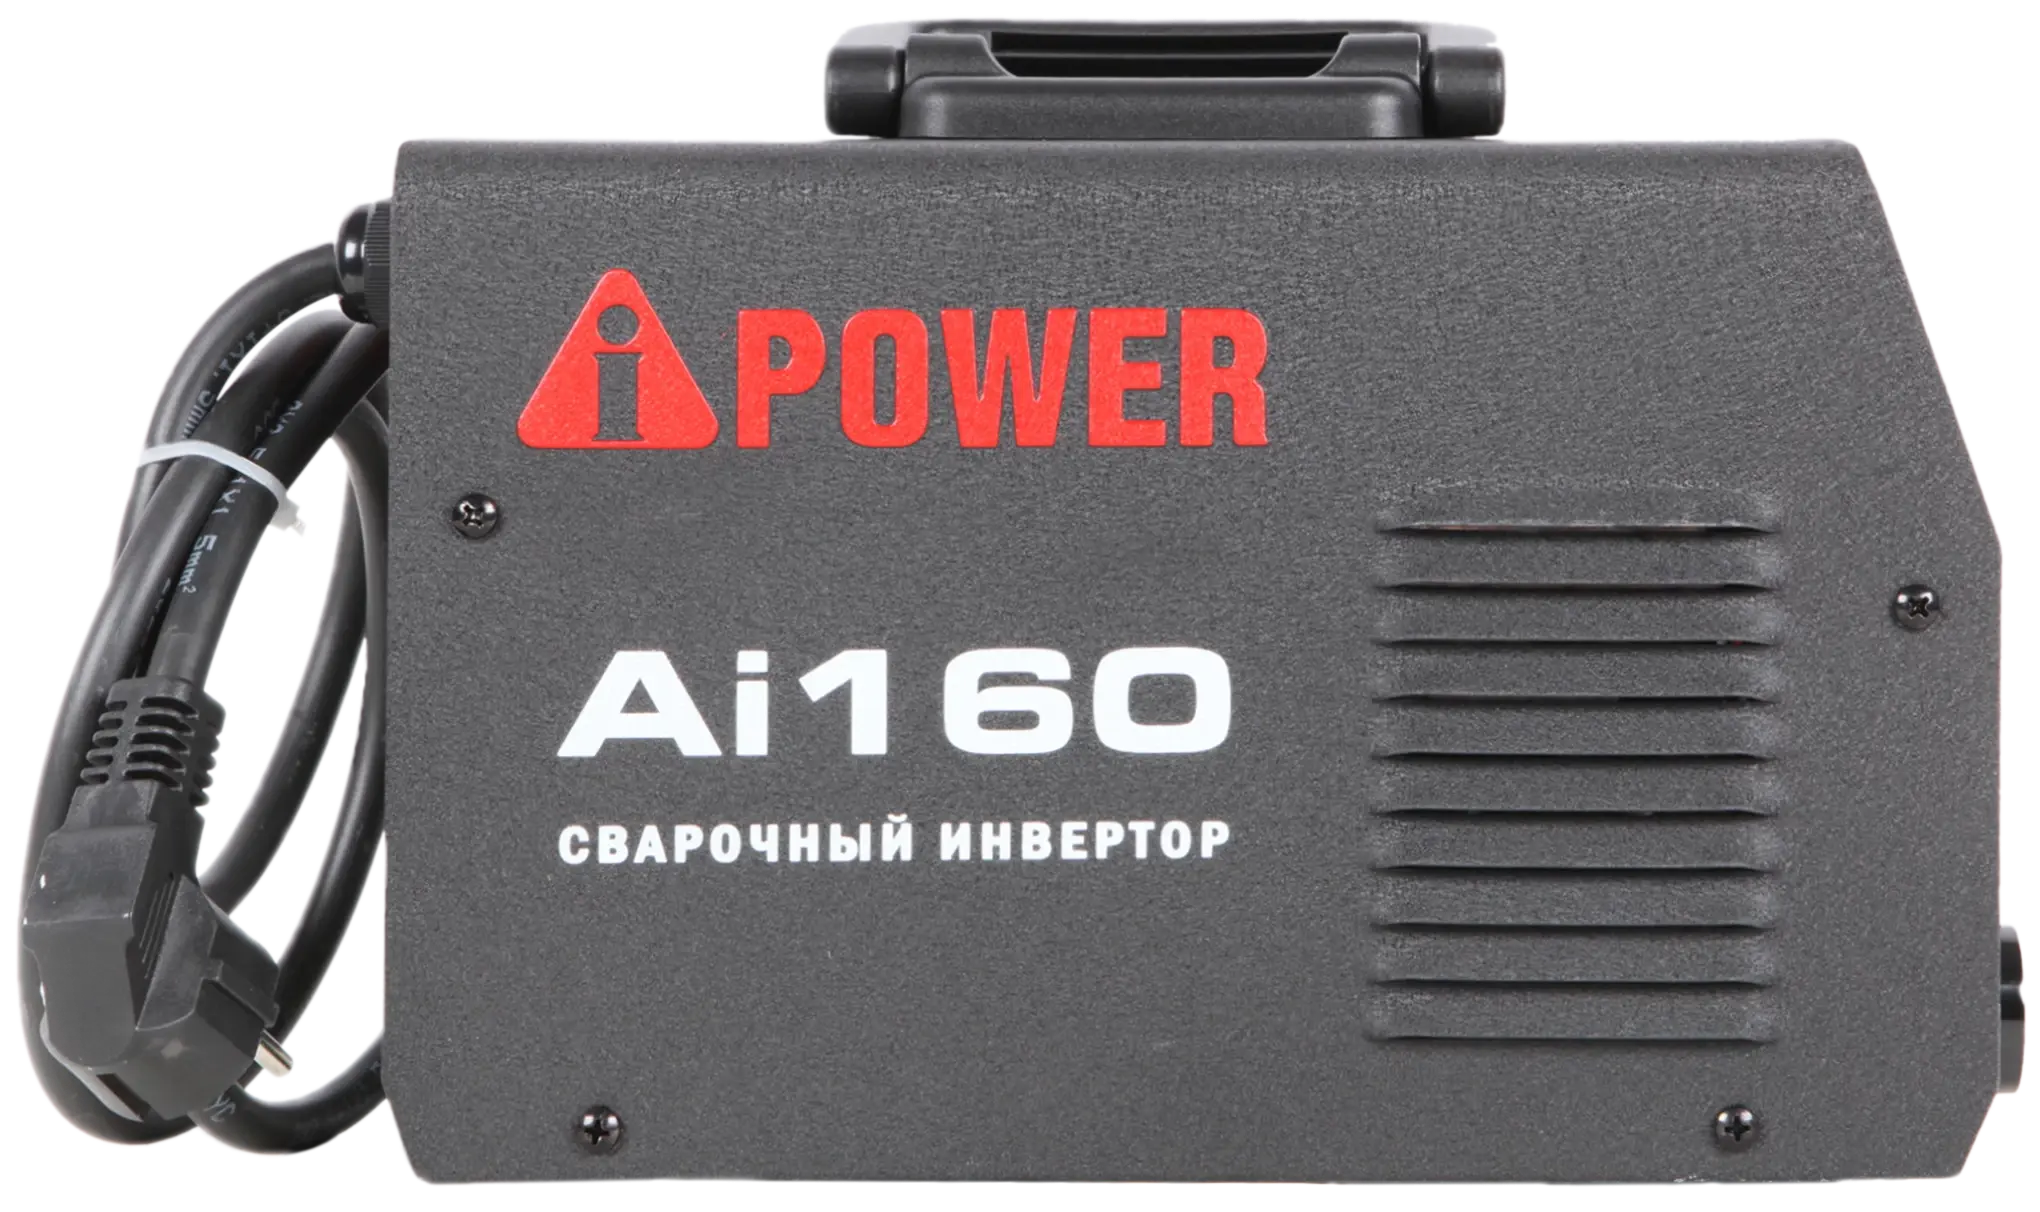 Инверторный сварочный аппарат A-IPOWER AI160 Гарантия 4 года Официальный магазин